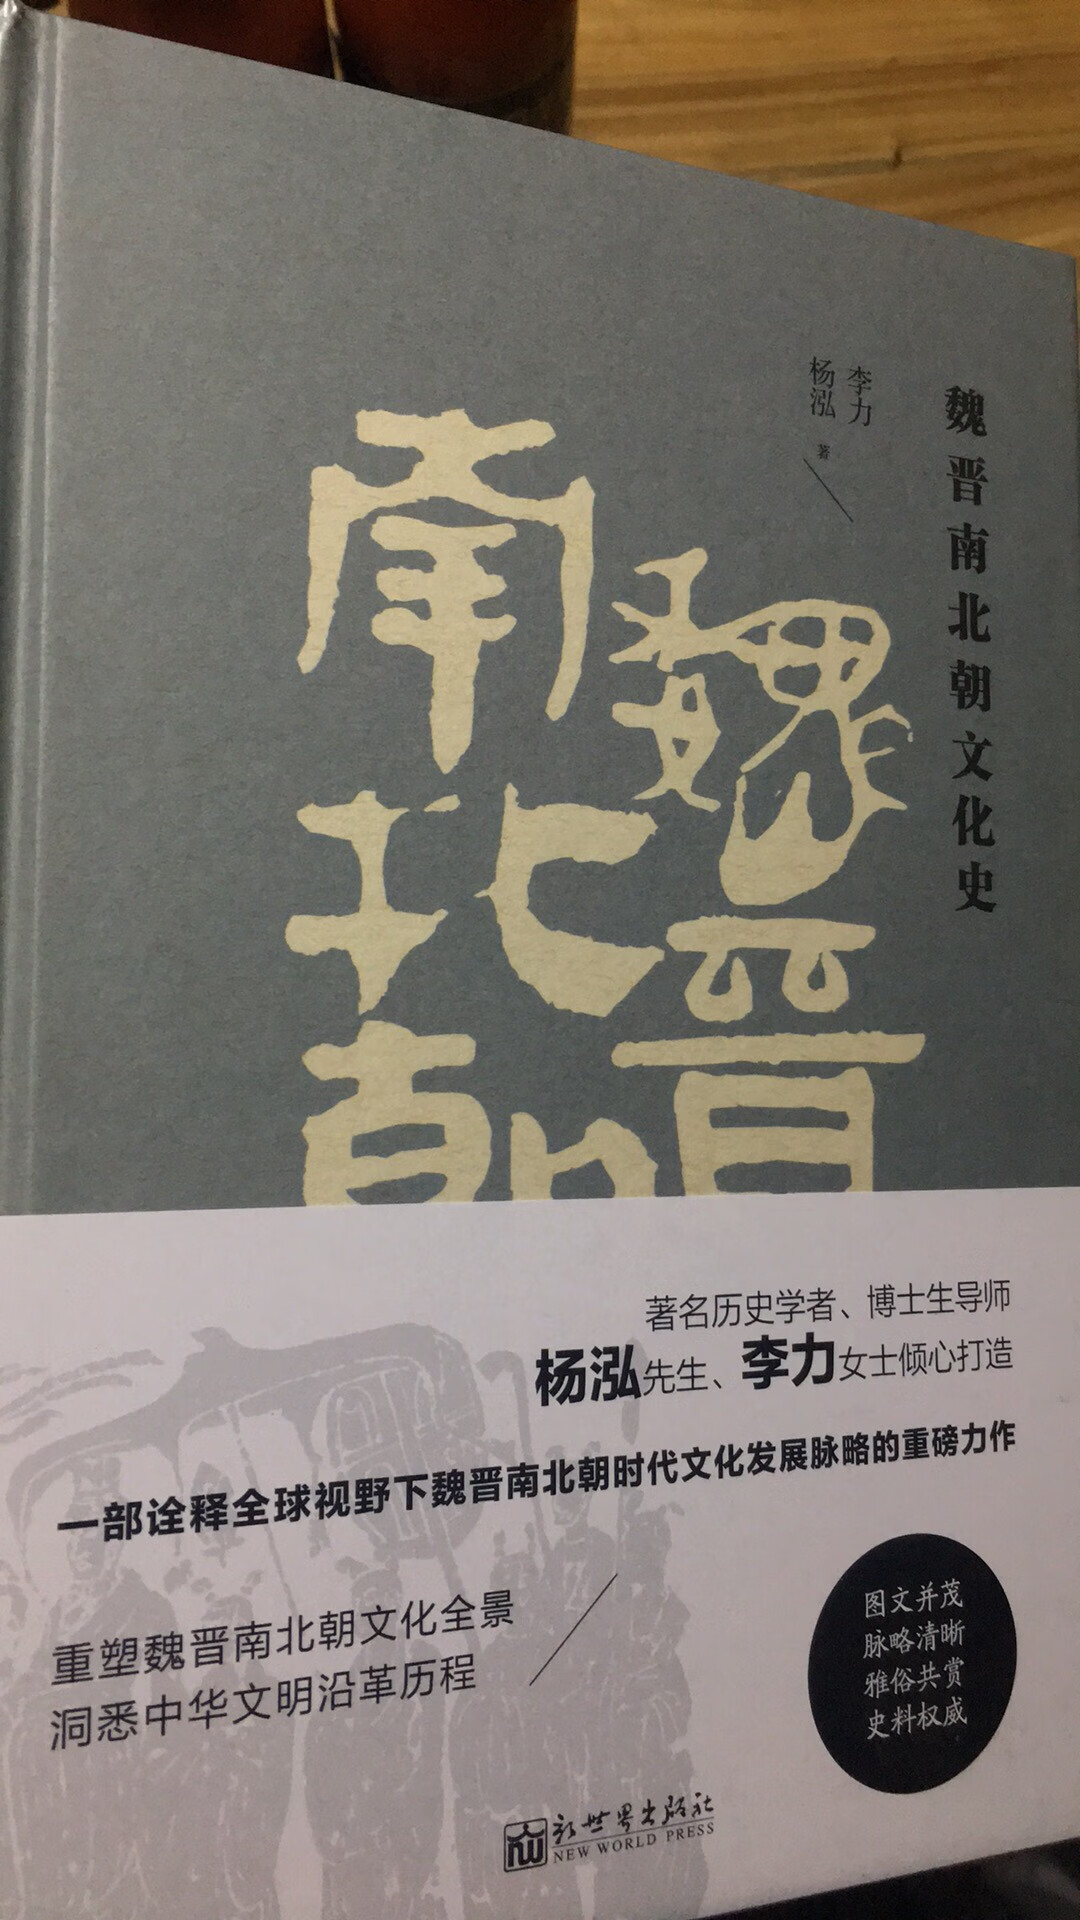 著名历史学者，博士生导师杨泓先生，李力女士倾心打造一部了解魏晋南北朝时期历史文化沿革的入门经典读物。